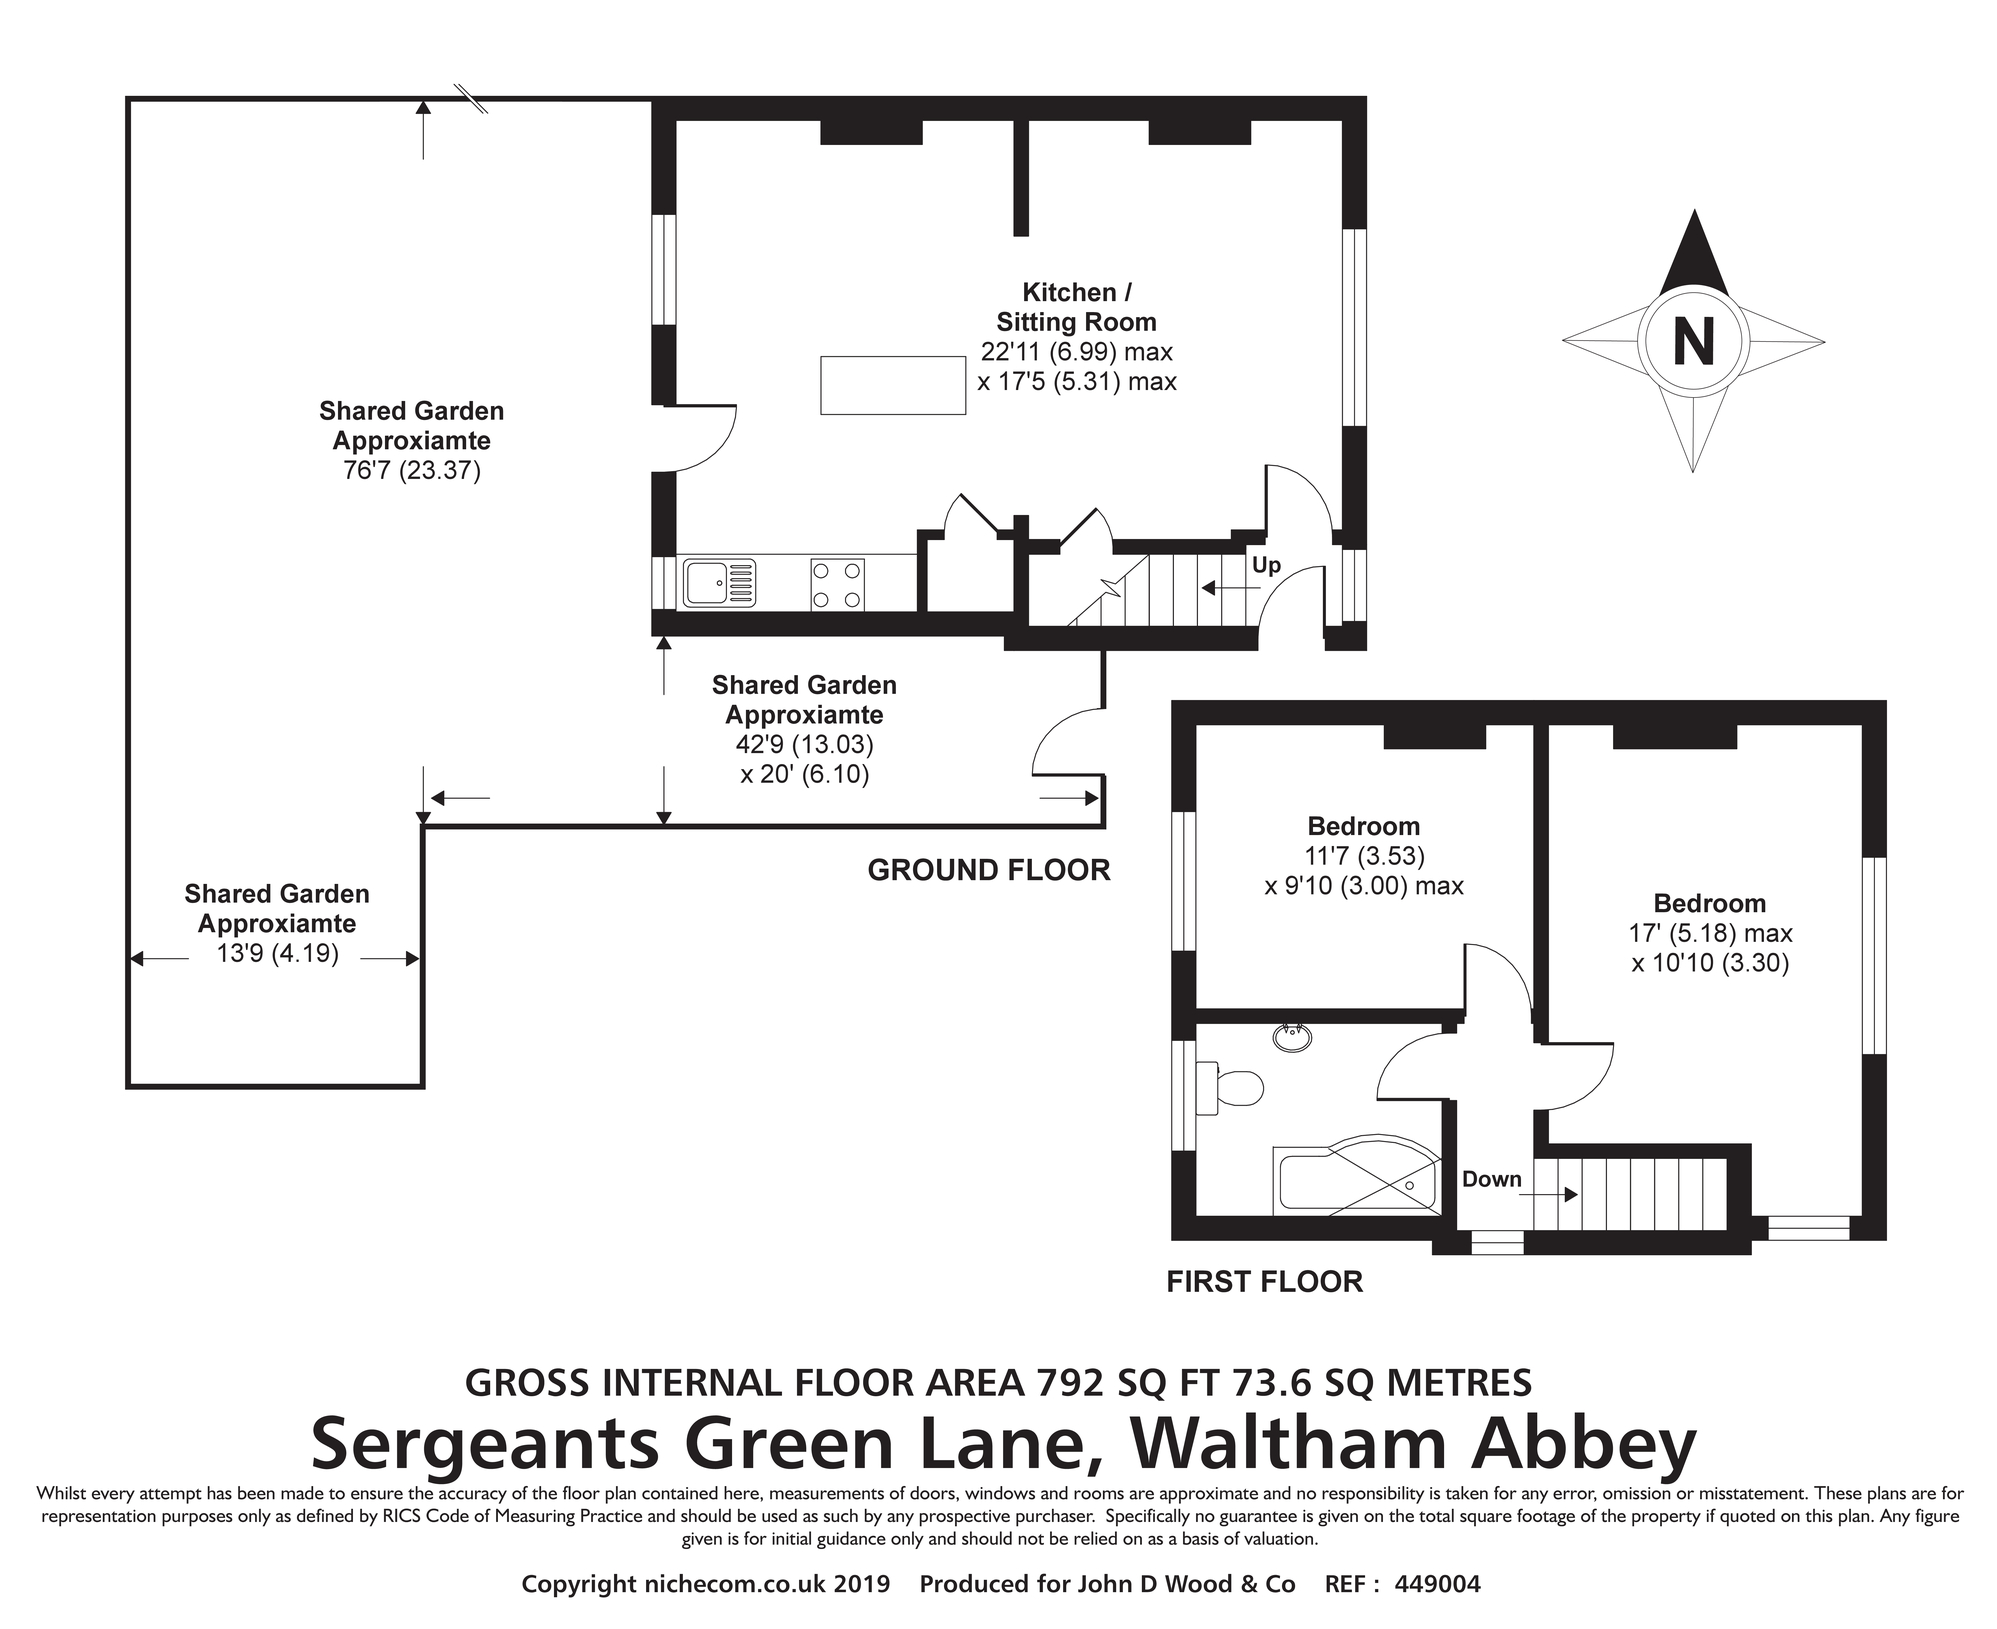 2 Bedrooms Semi-detached house to rent in Sergeants Green Lane, Waltham Abbey EN9